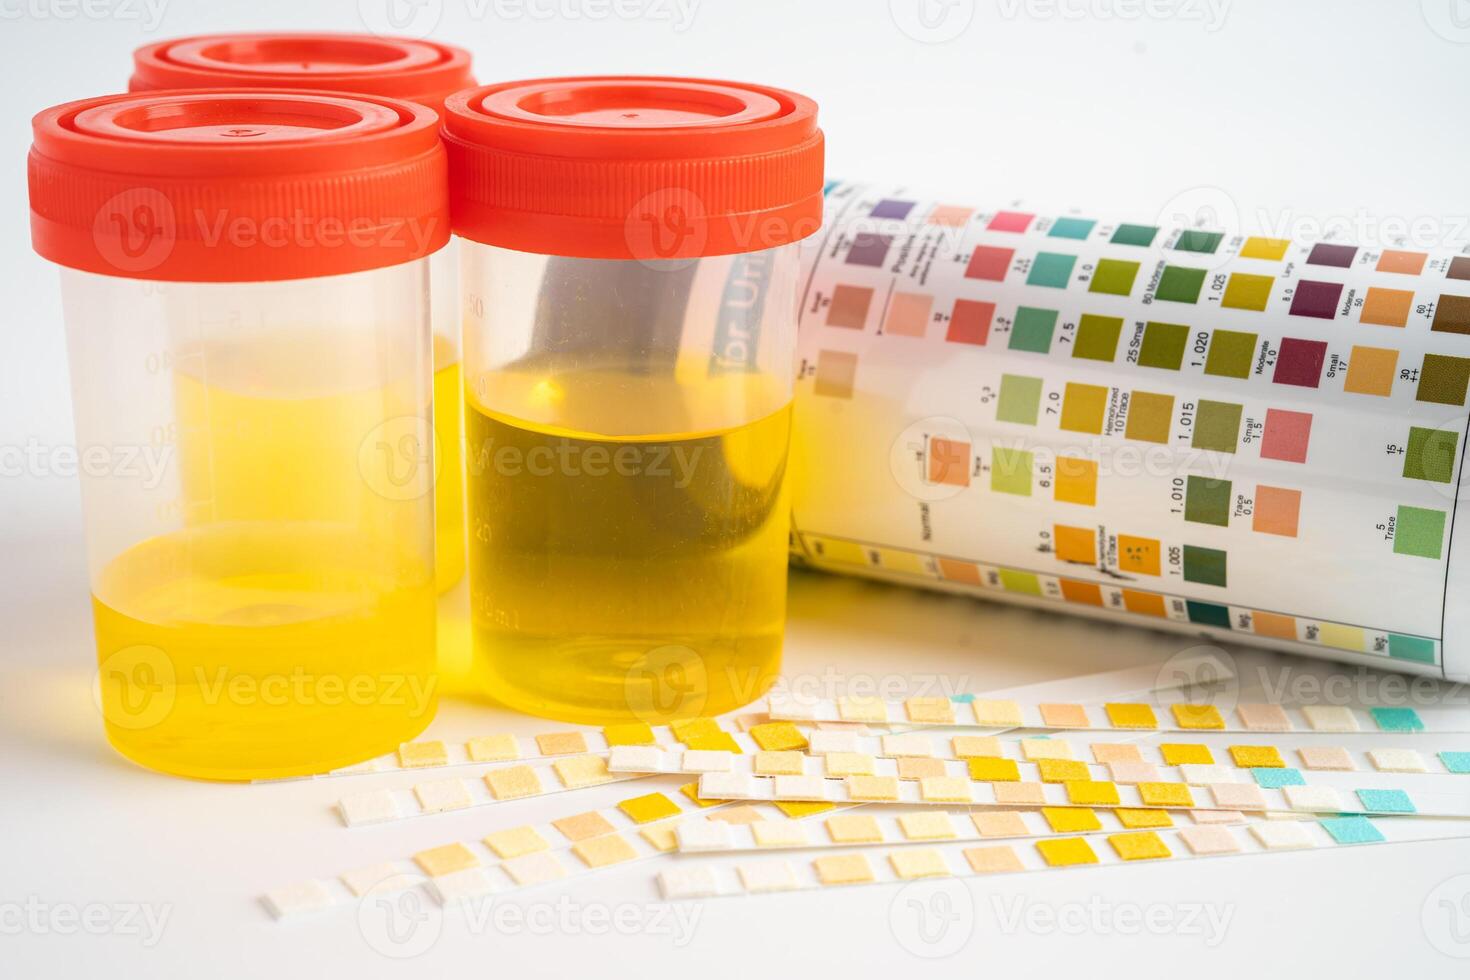 urinálise, urina copo com reagente faixa ph papel teste e comparação gráfico dentro laboratório. foto